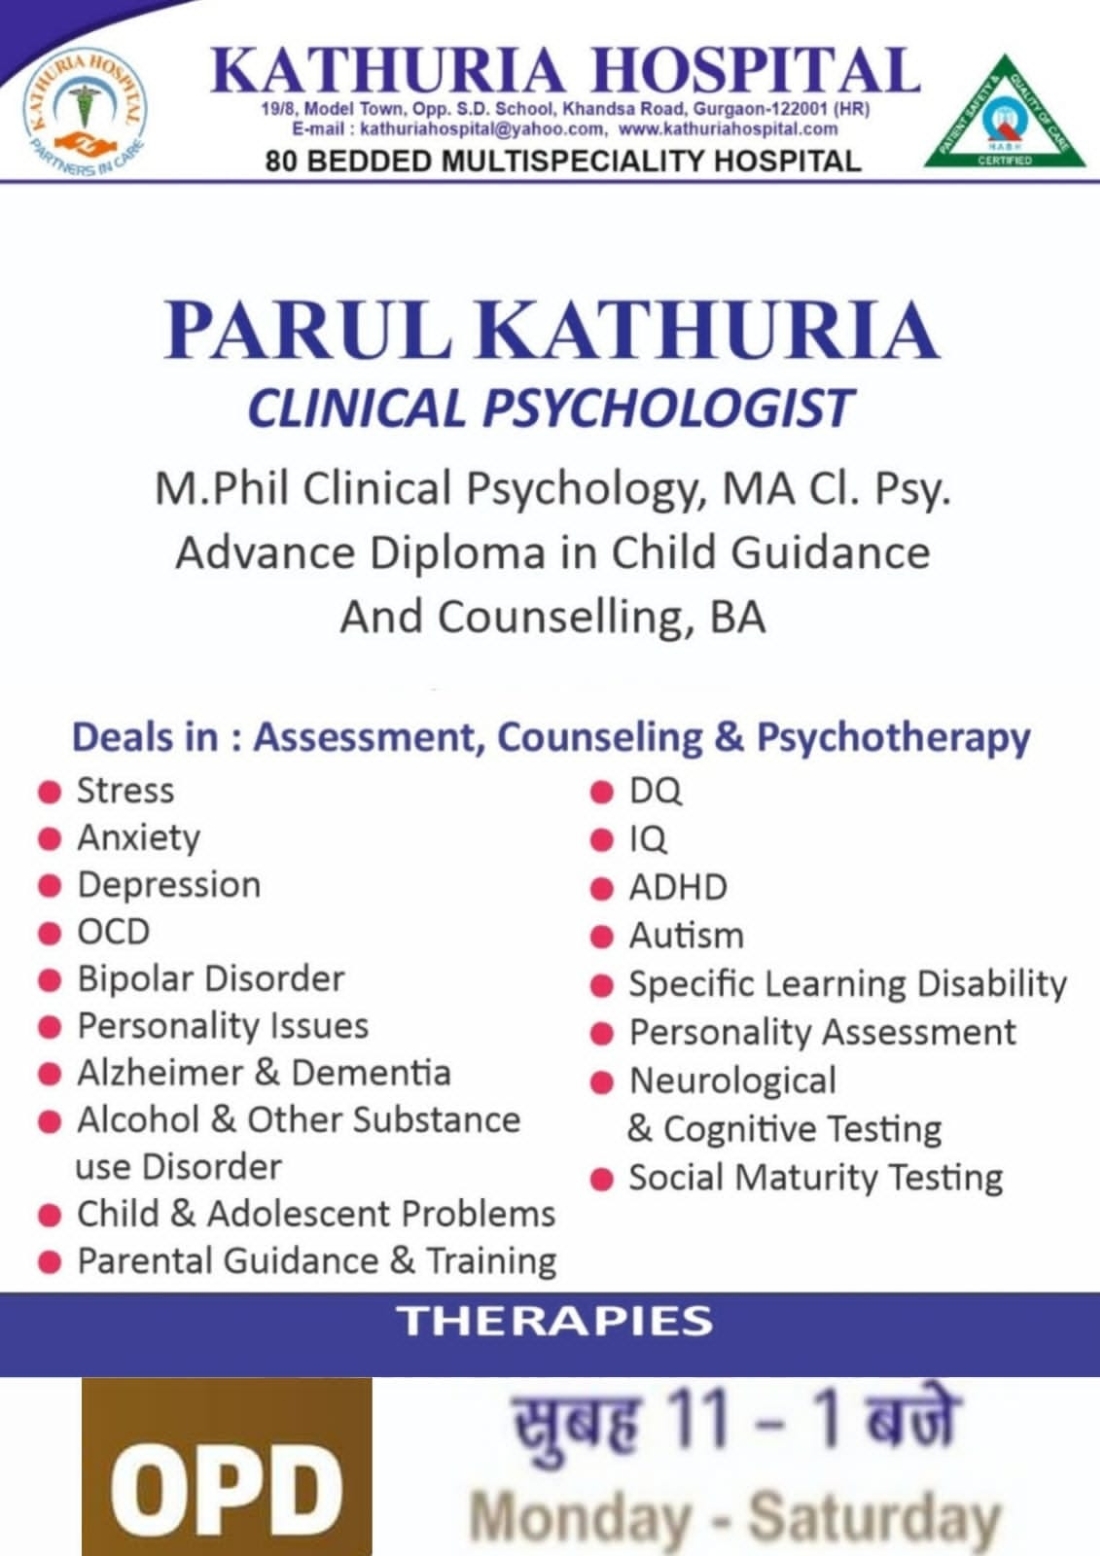 Parul Kathuria - Clinical Psychologist